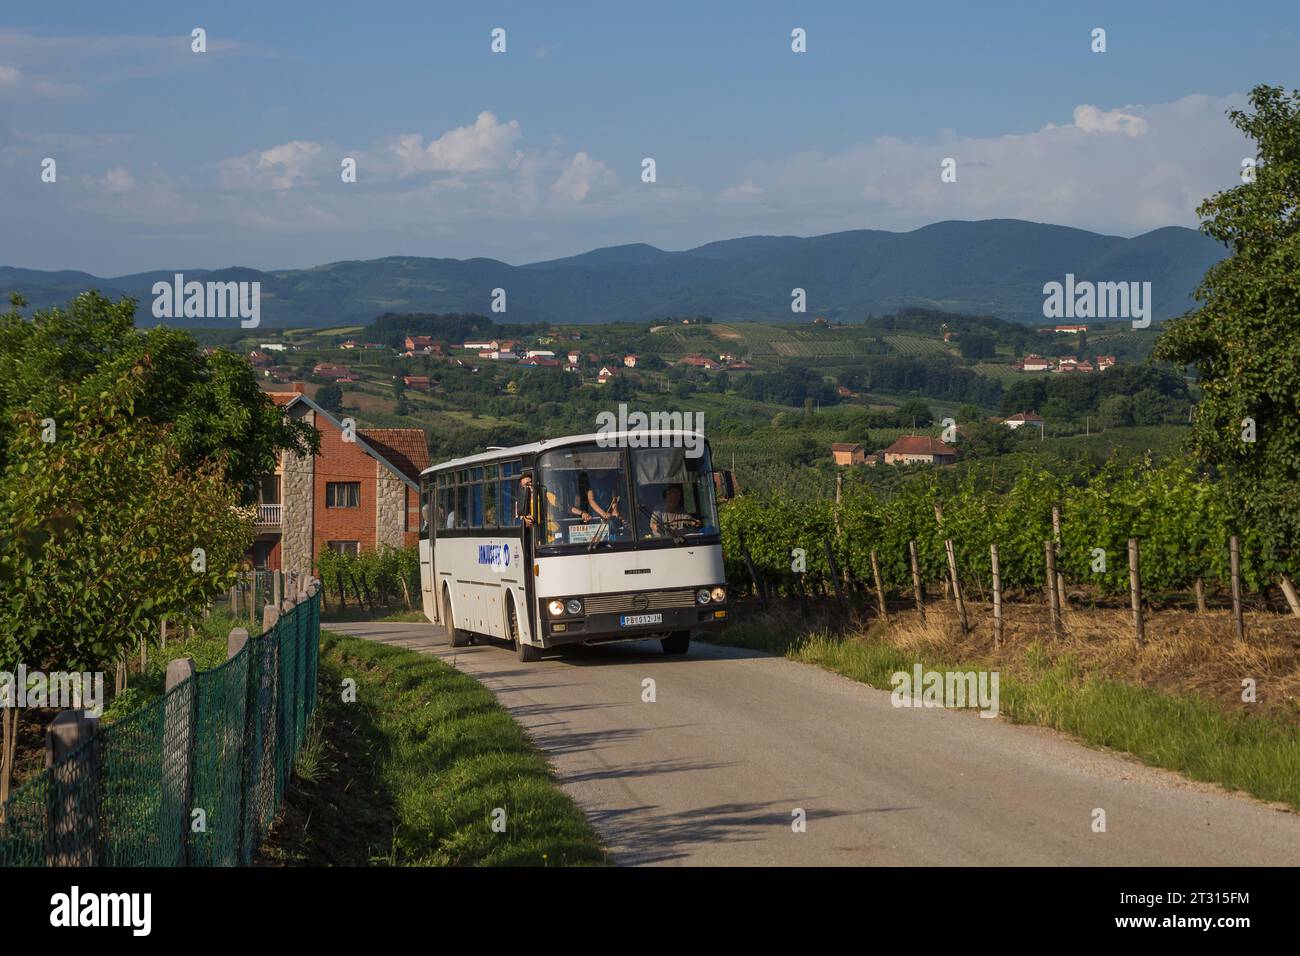 6.06.2022. Serbia, near Topola. Sanos S415 from Topola on local route. Stock Photo